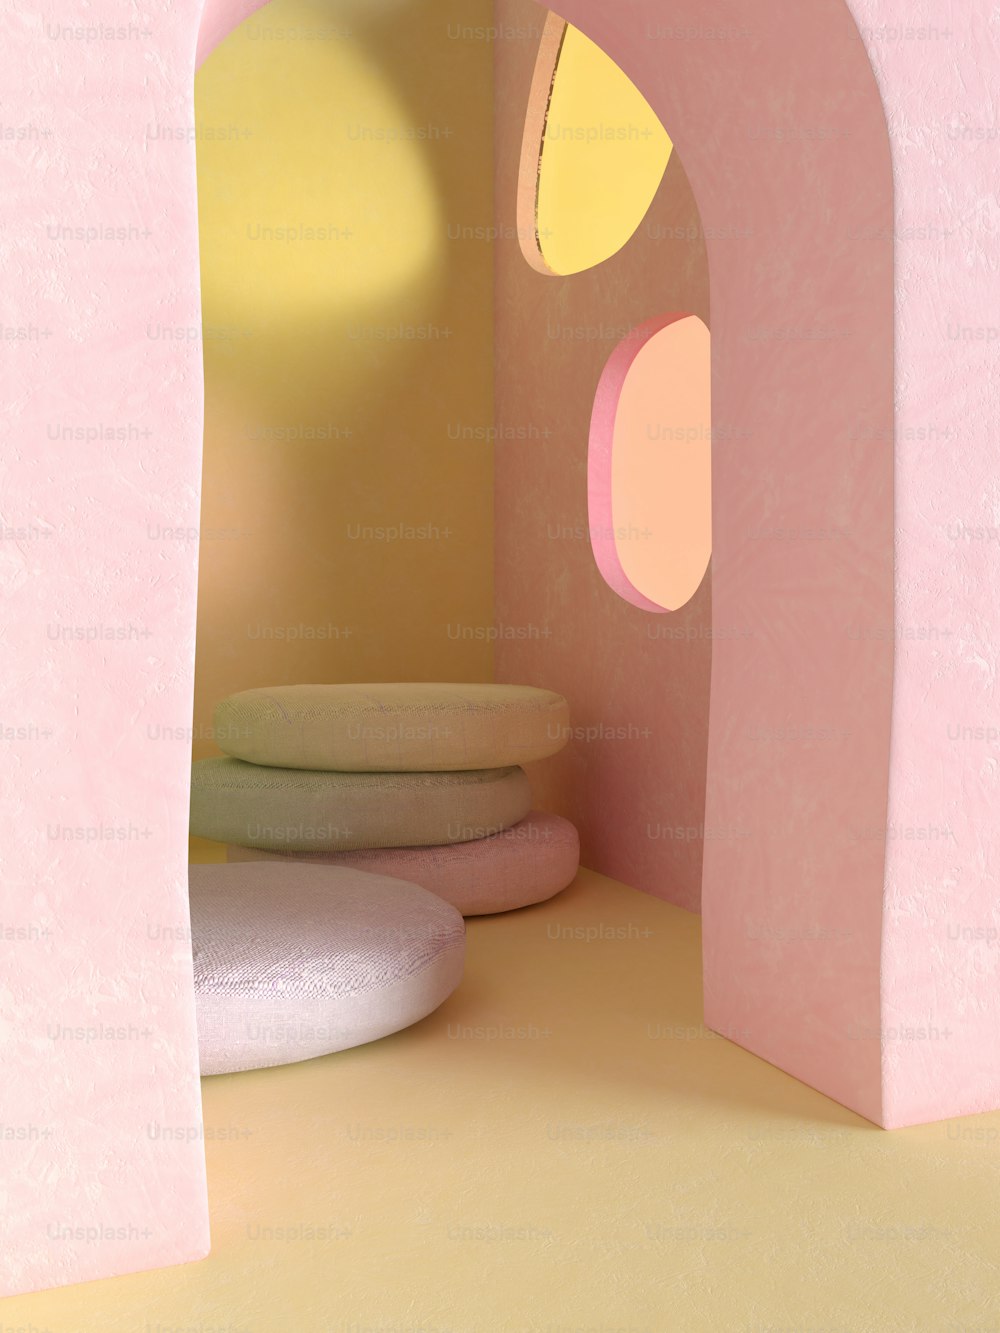 Ein rosa-gelber Raum mit einem runden Objekt auf dem Boden